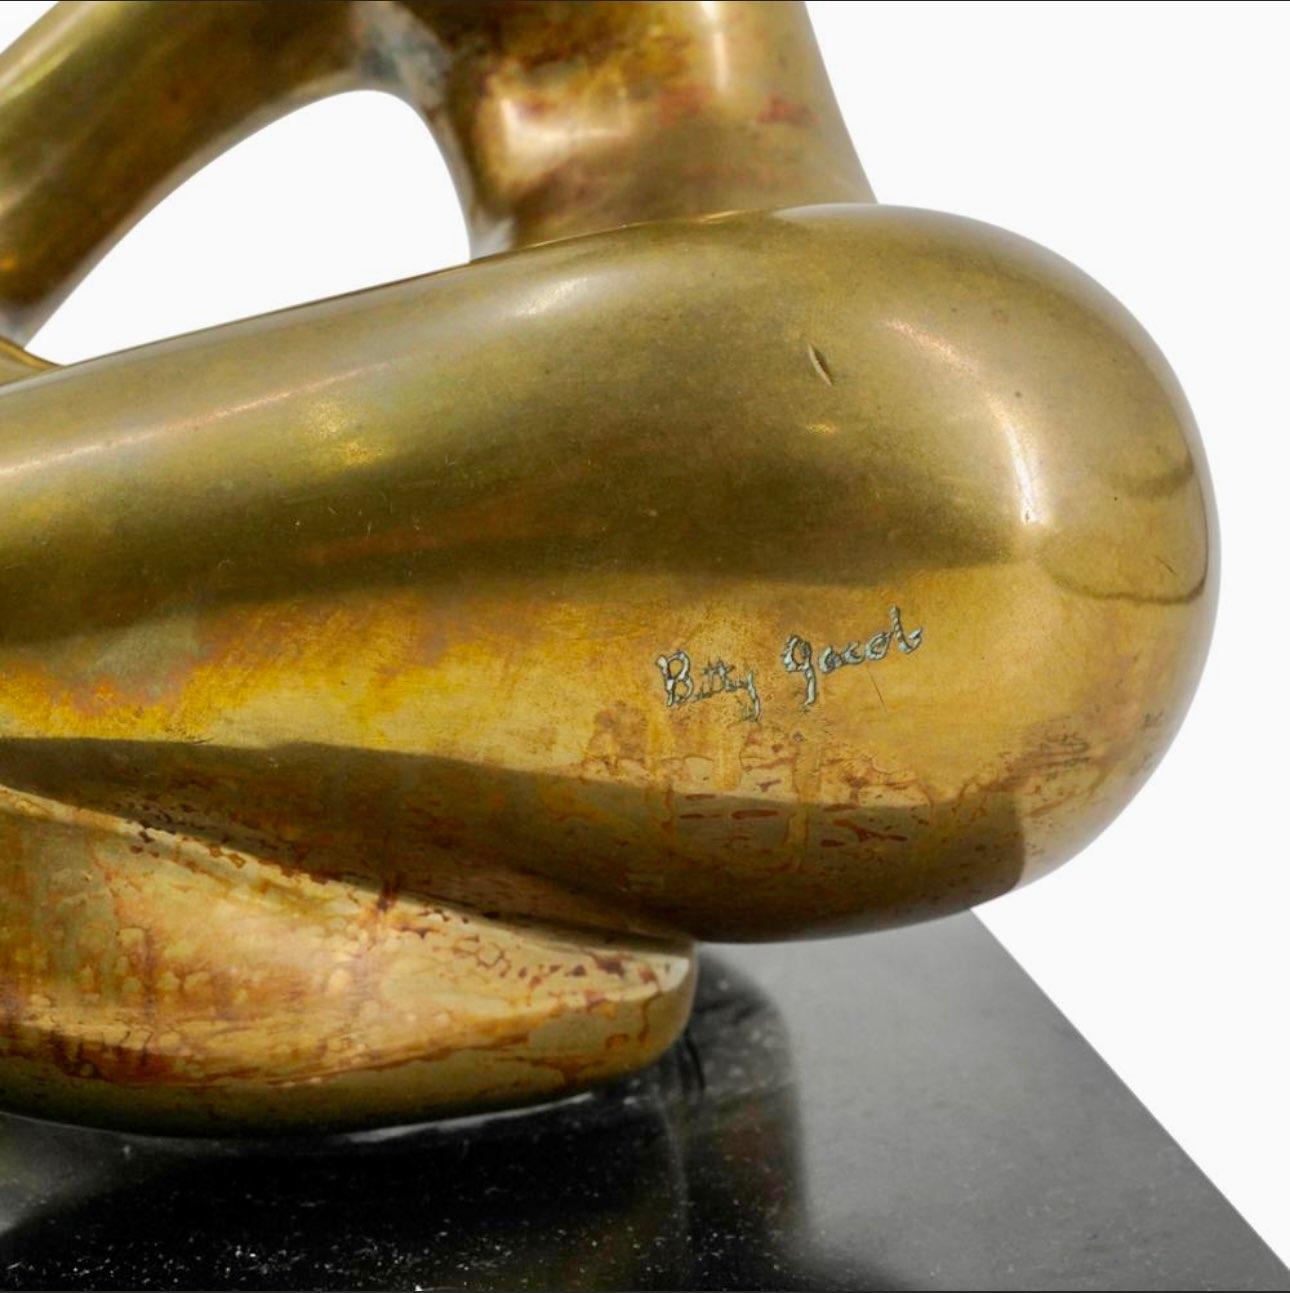 Die Bronzeskulptur von Betty Jacob stellt eine glatte und kurvenreiche vergoldete Bronzefigur dar, die auf den Knien posiert.
Signiert hoch oben auf dem linken Oberschenkel und montiert auf einem schwarzen Sockel
Abmessungen H: 11,25 X B: 8,25 X L: